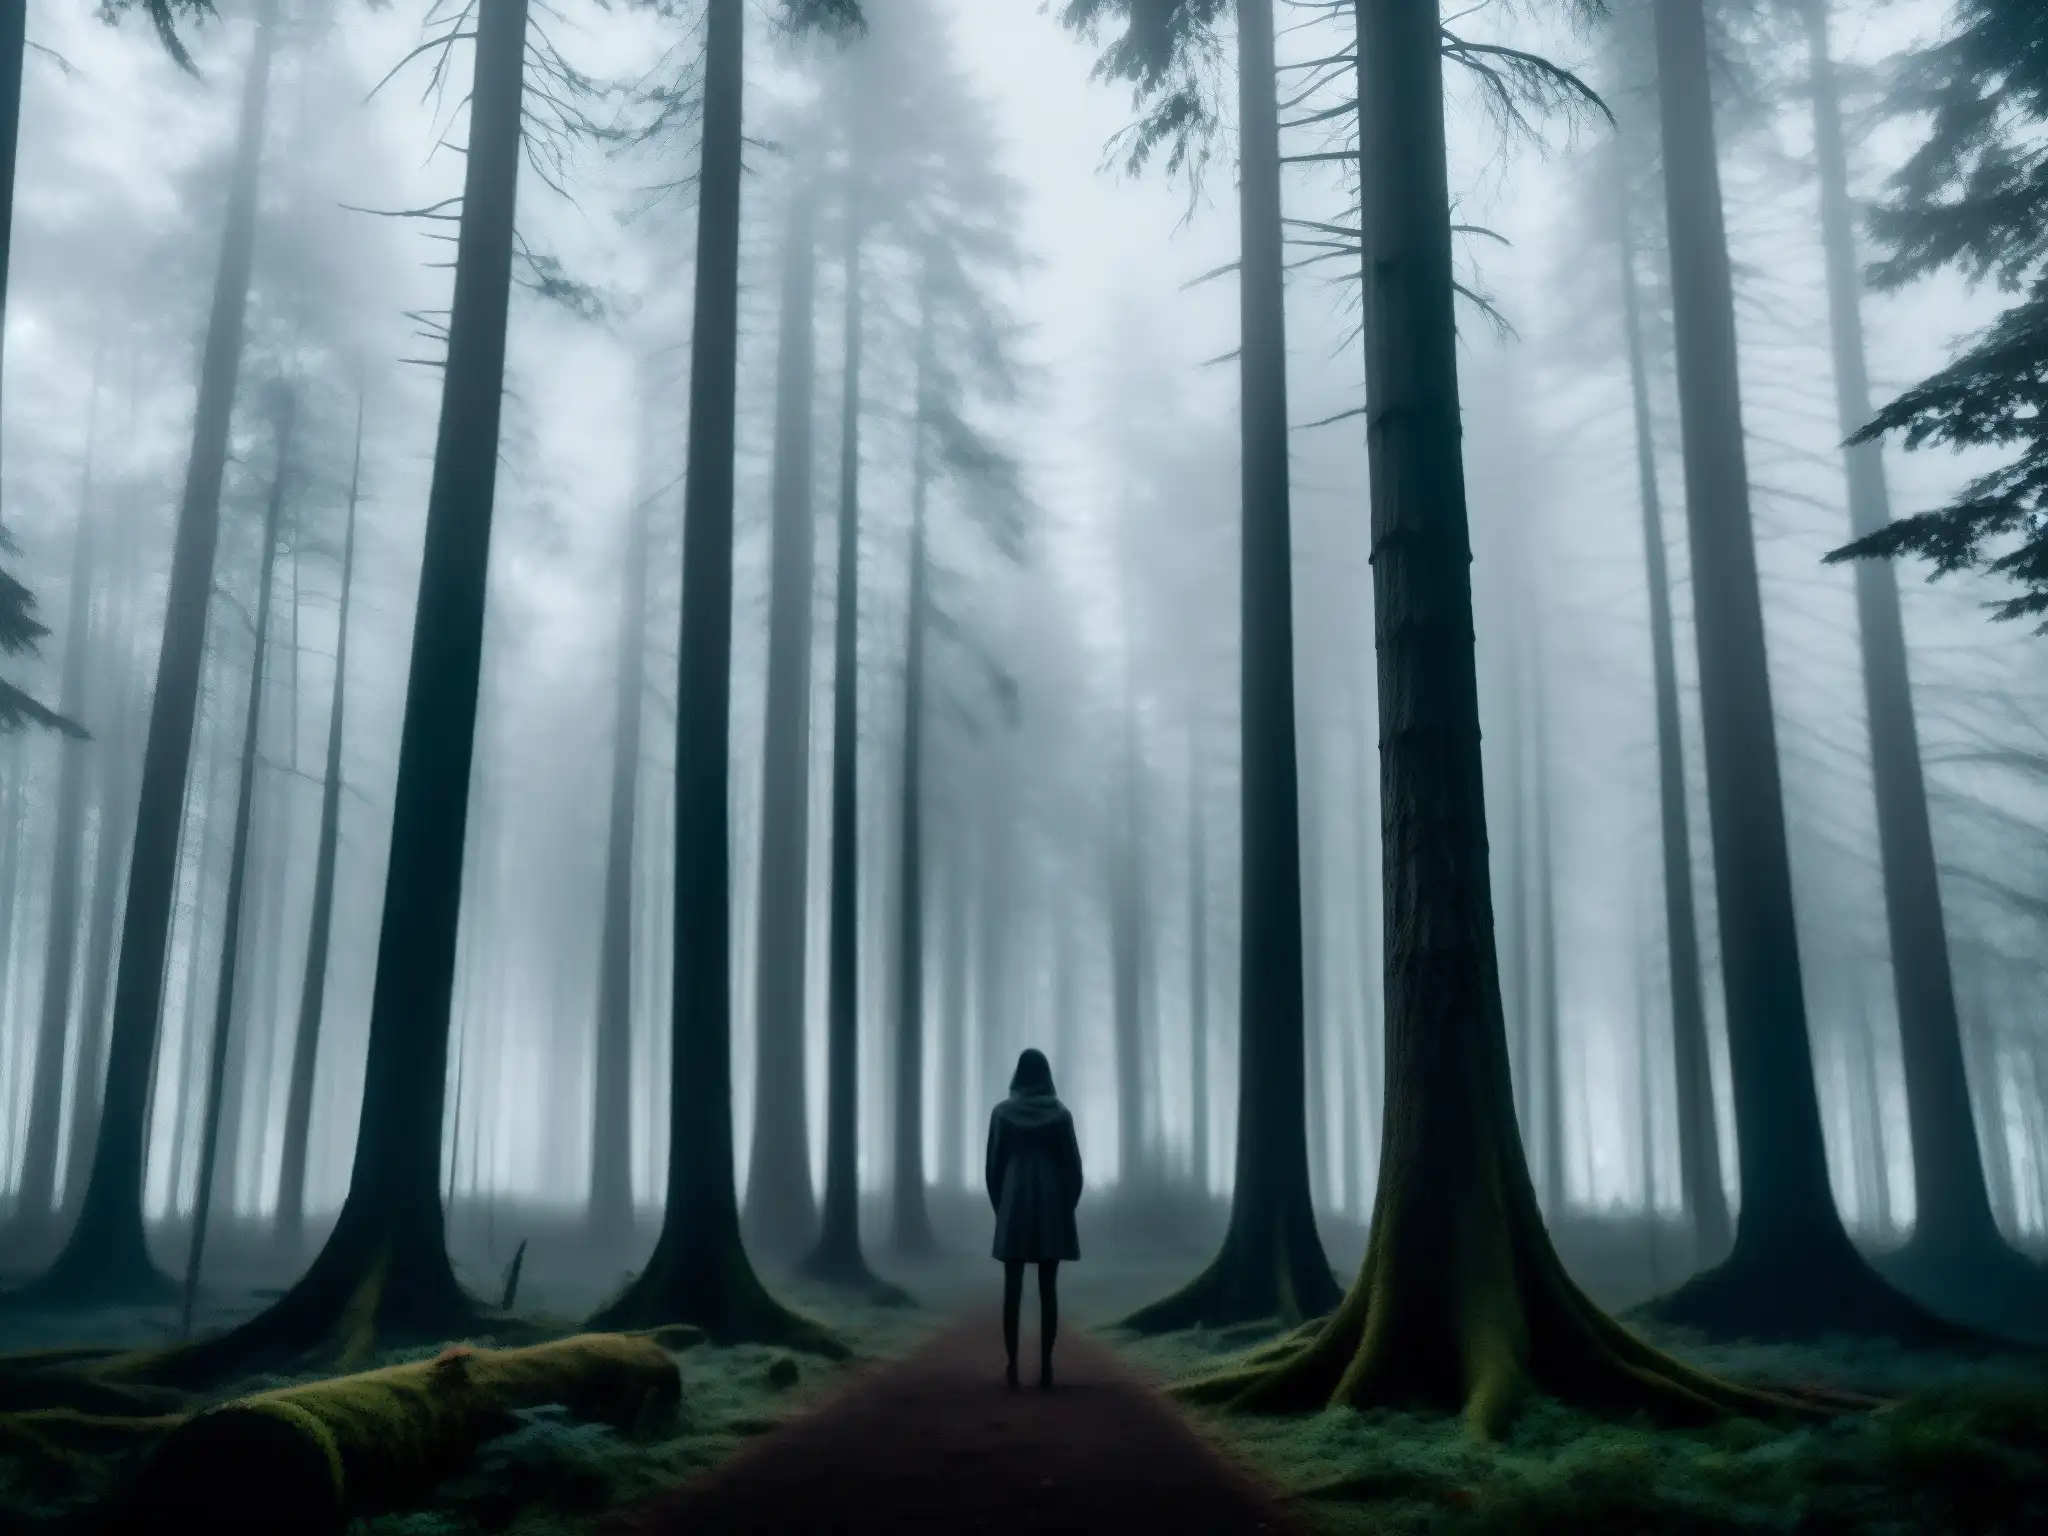 En un bosque oscuro y brumoso, se alza una figura sombría con brazos alargados y rostro sin rasgos